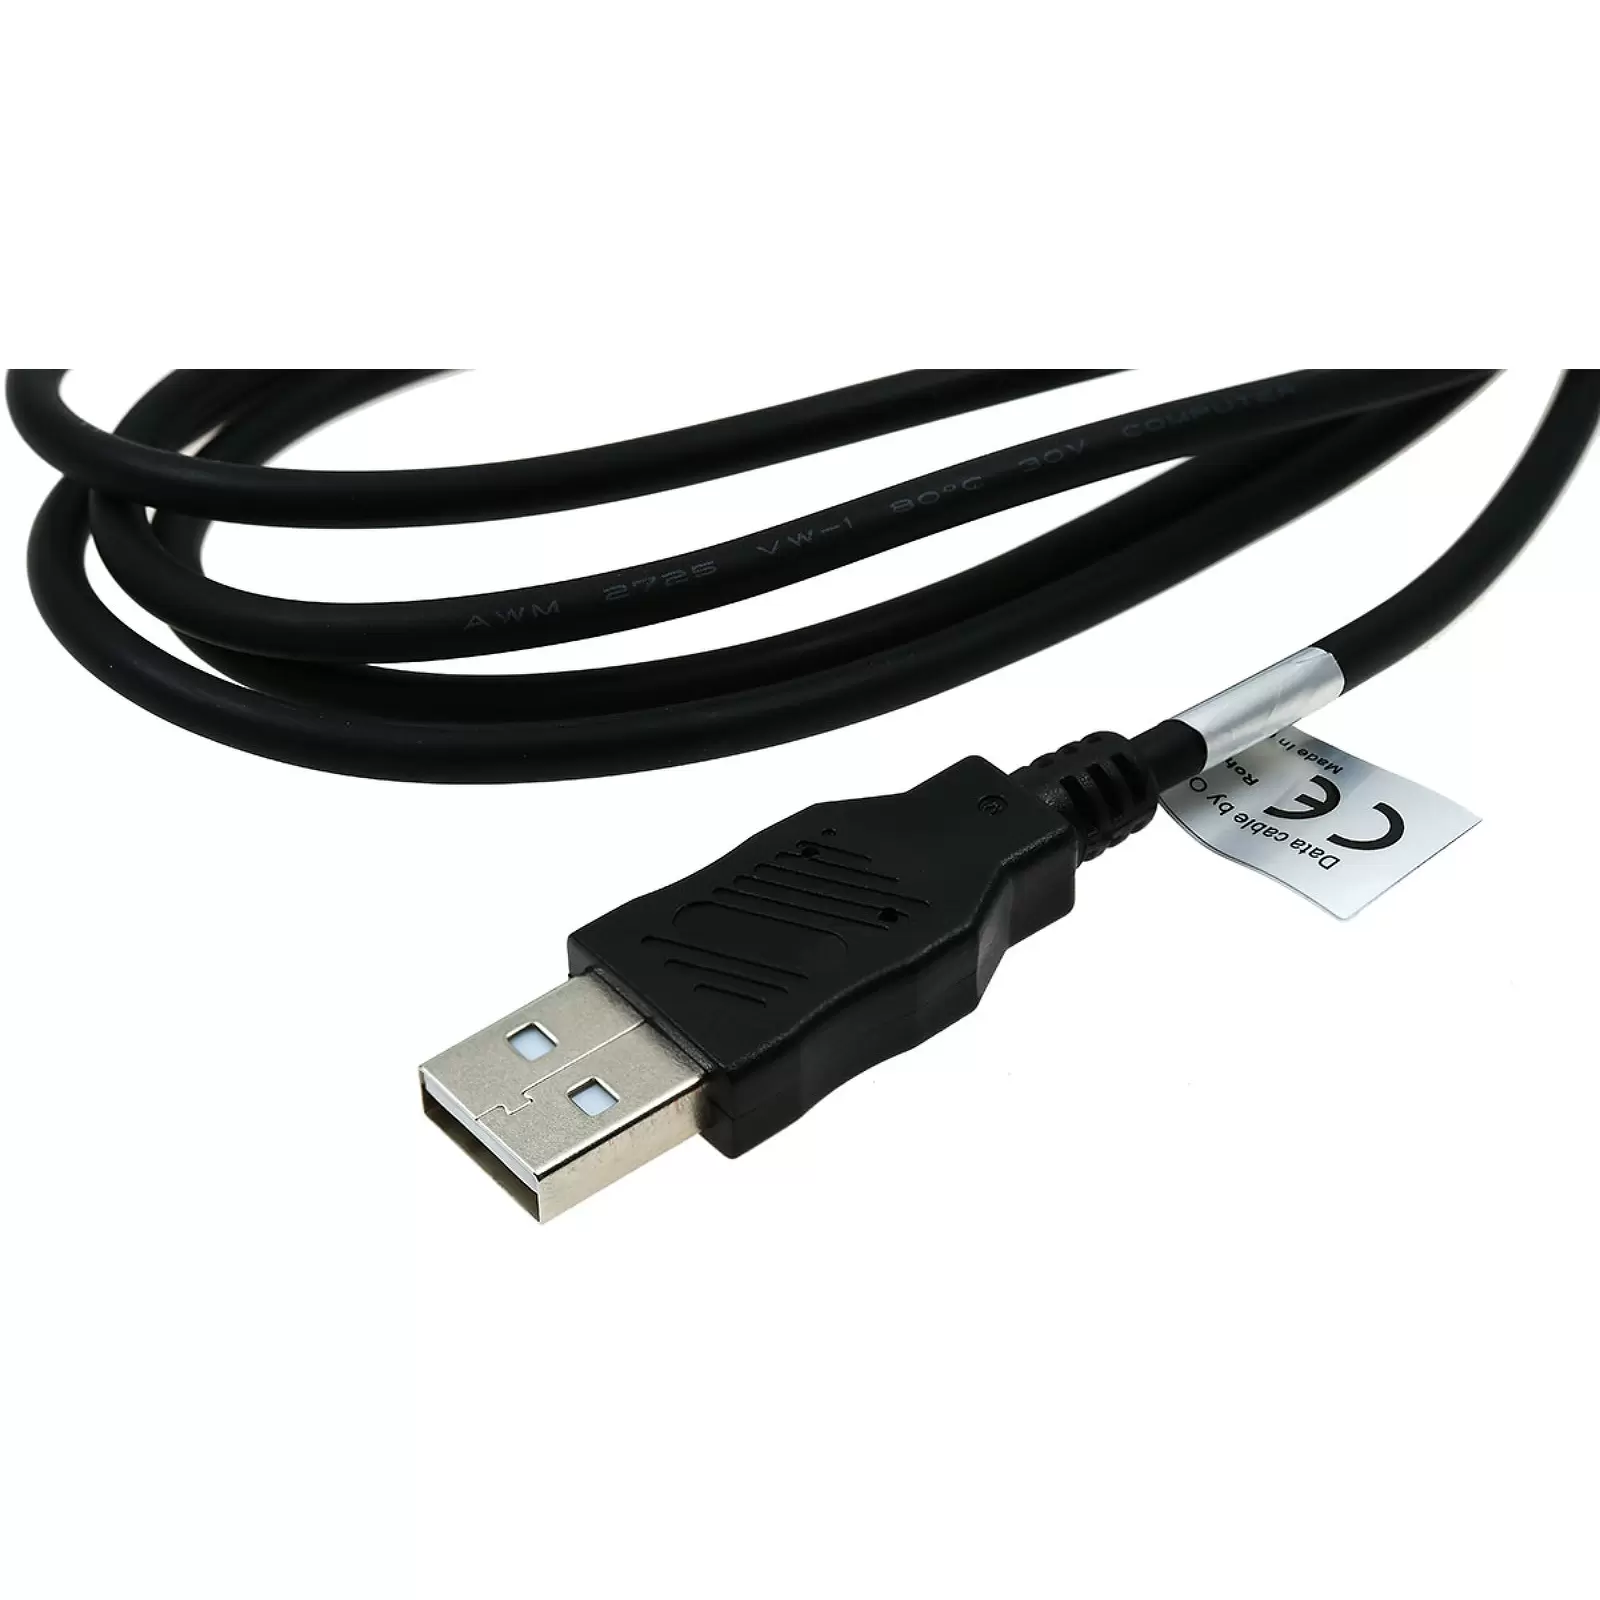 USB-Datenkabel kompatibel mit Panasonic K1HA08CD0019 / Casio EMC-5